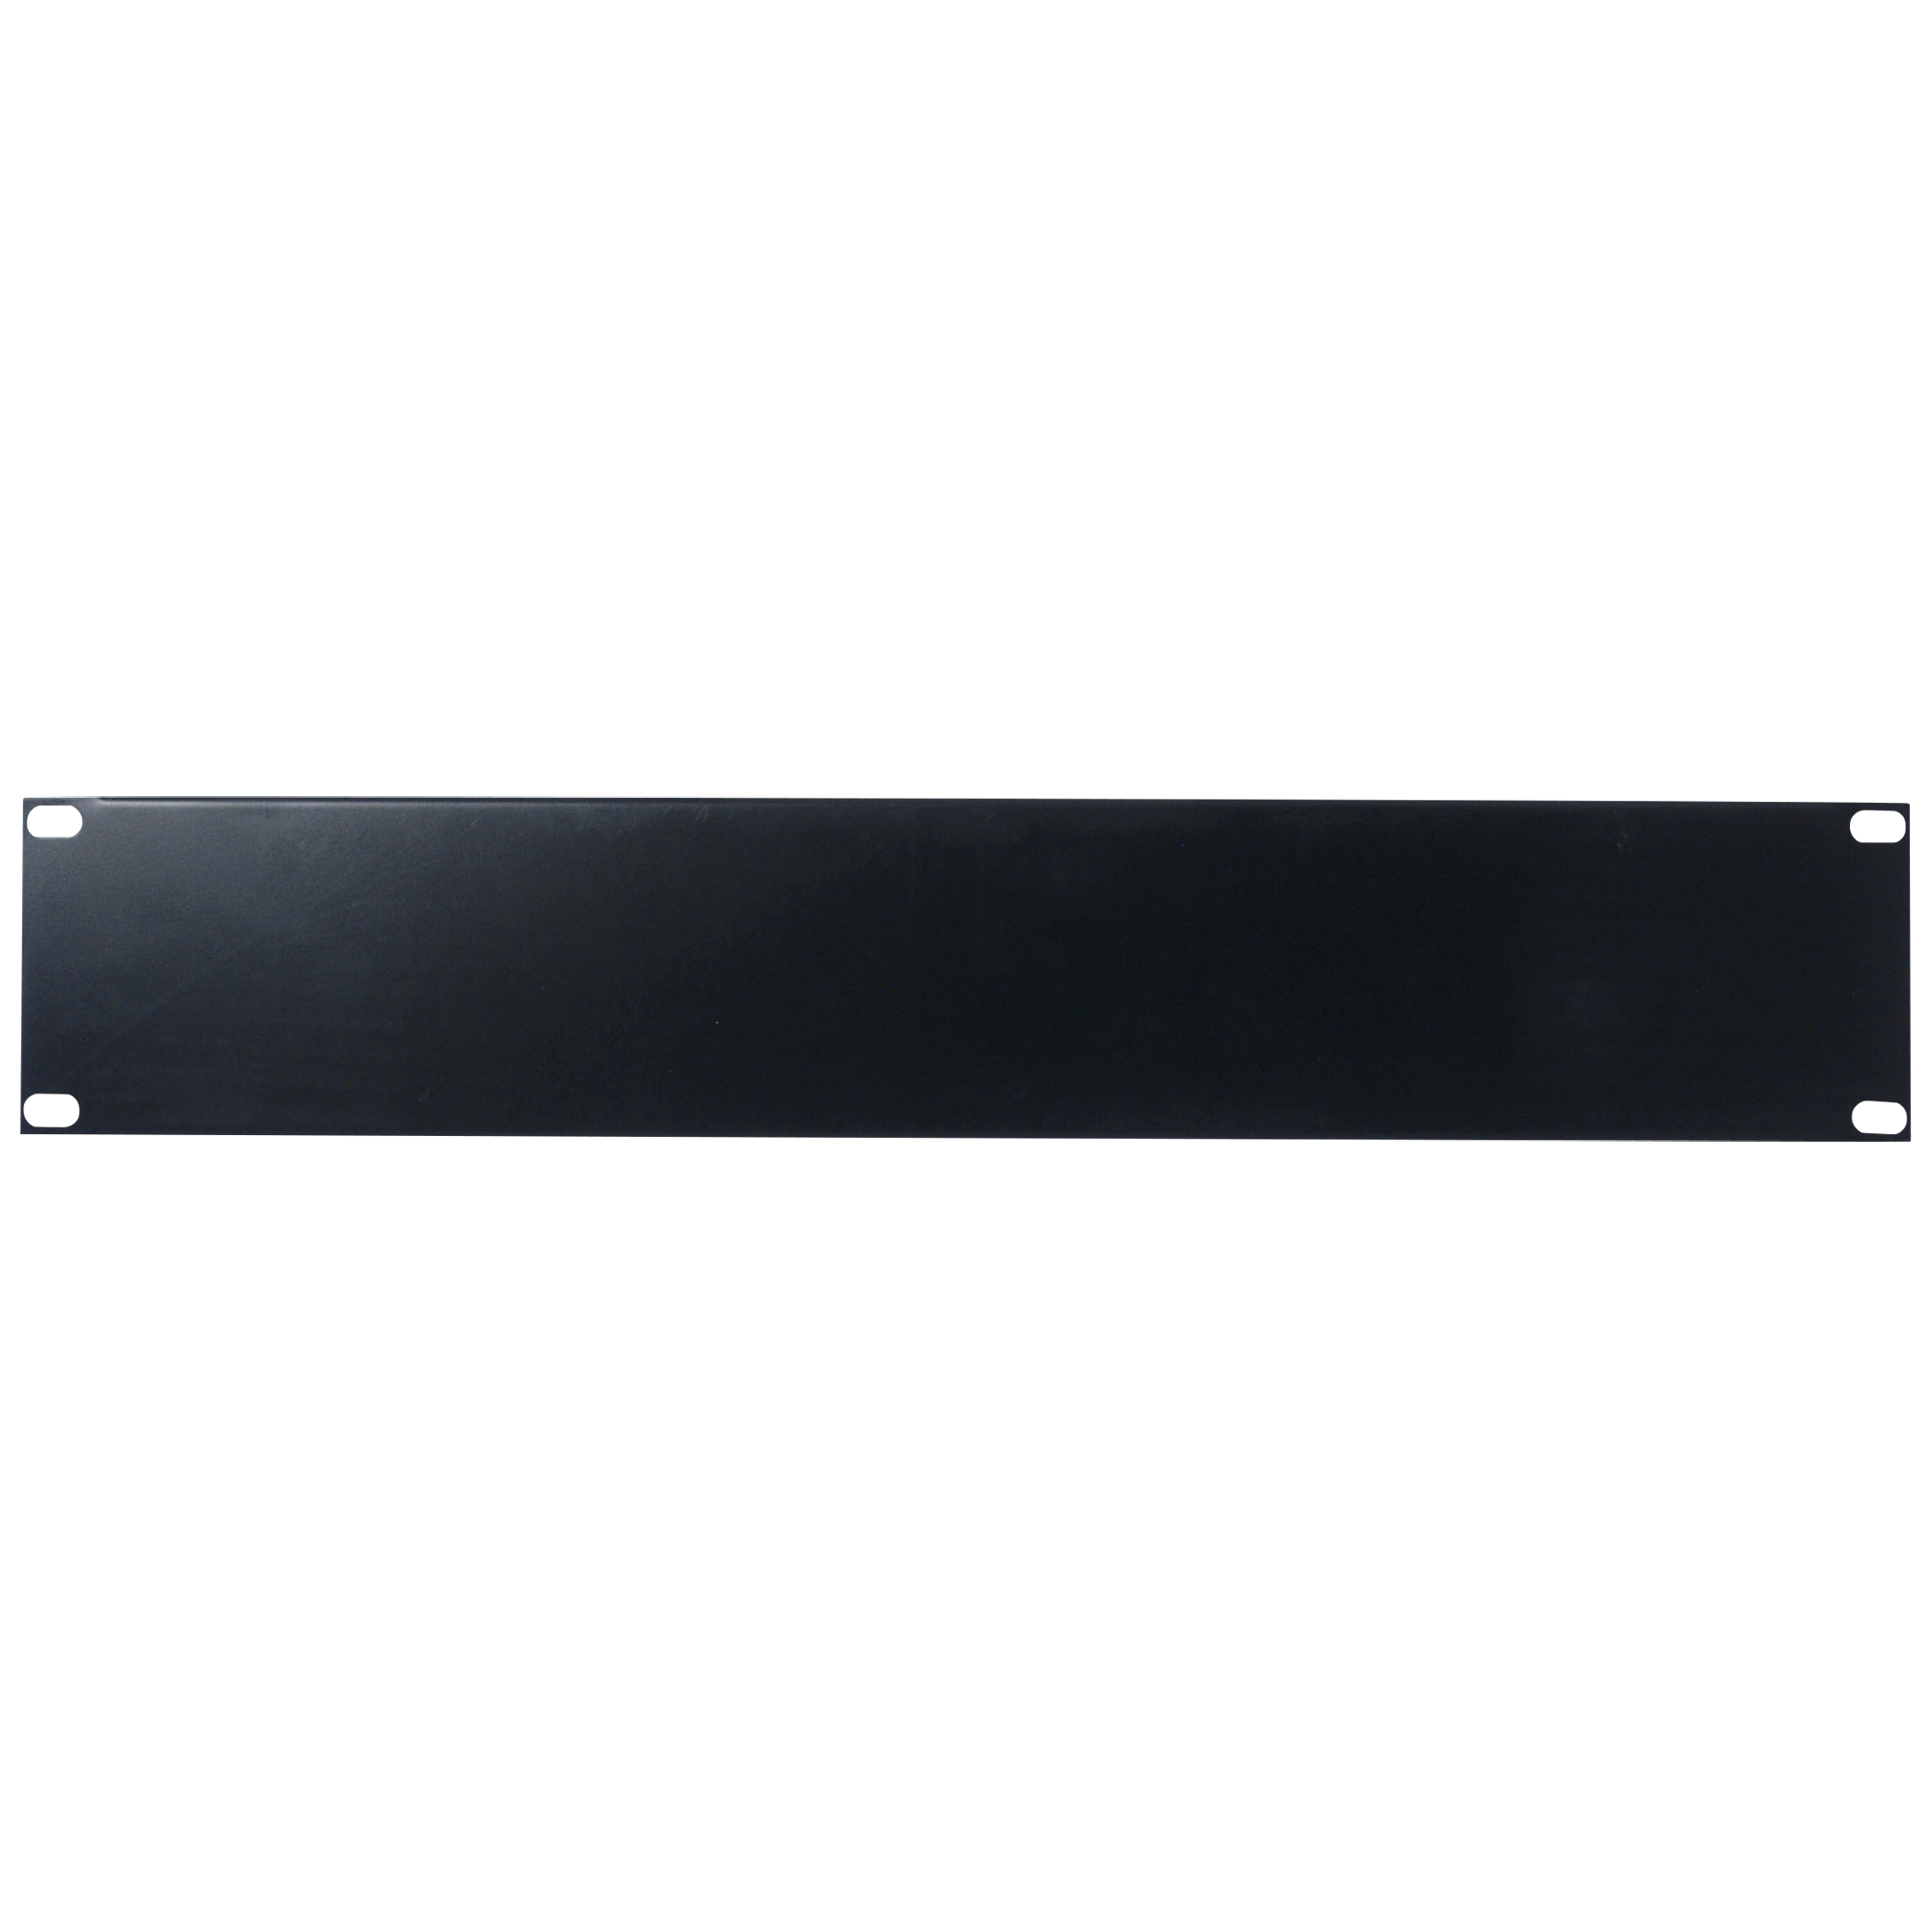 Showgear 19 inch Blind Panel Black 2HE